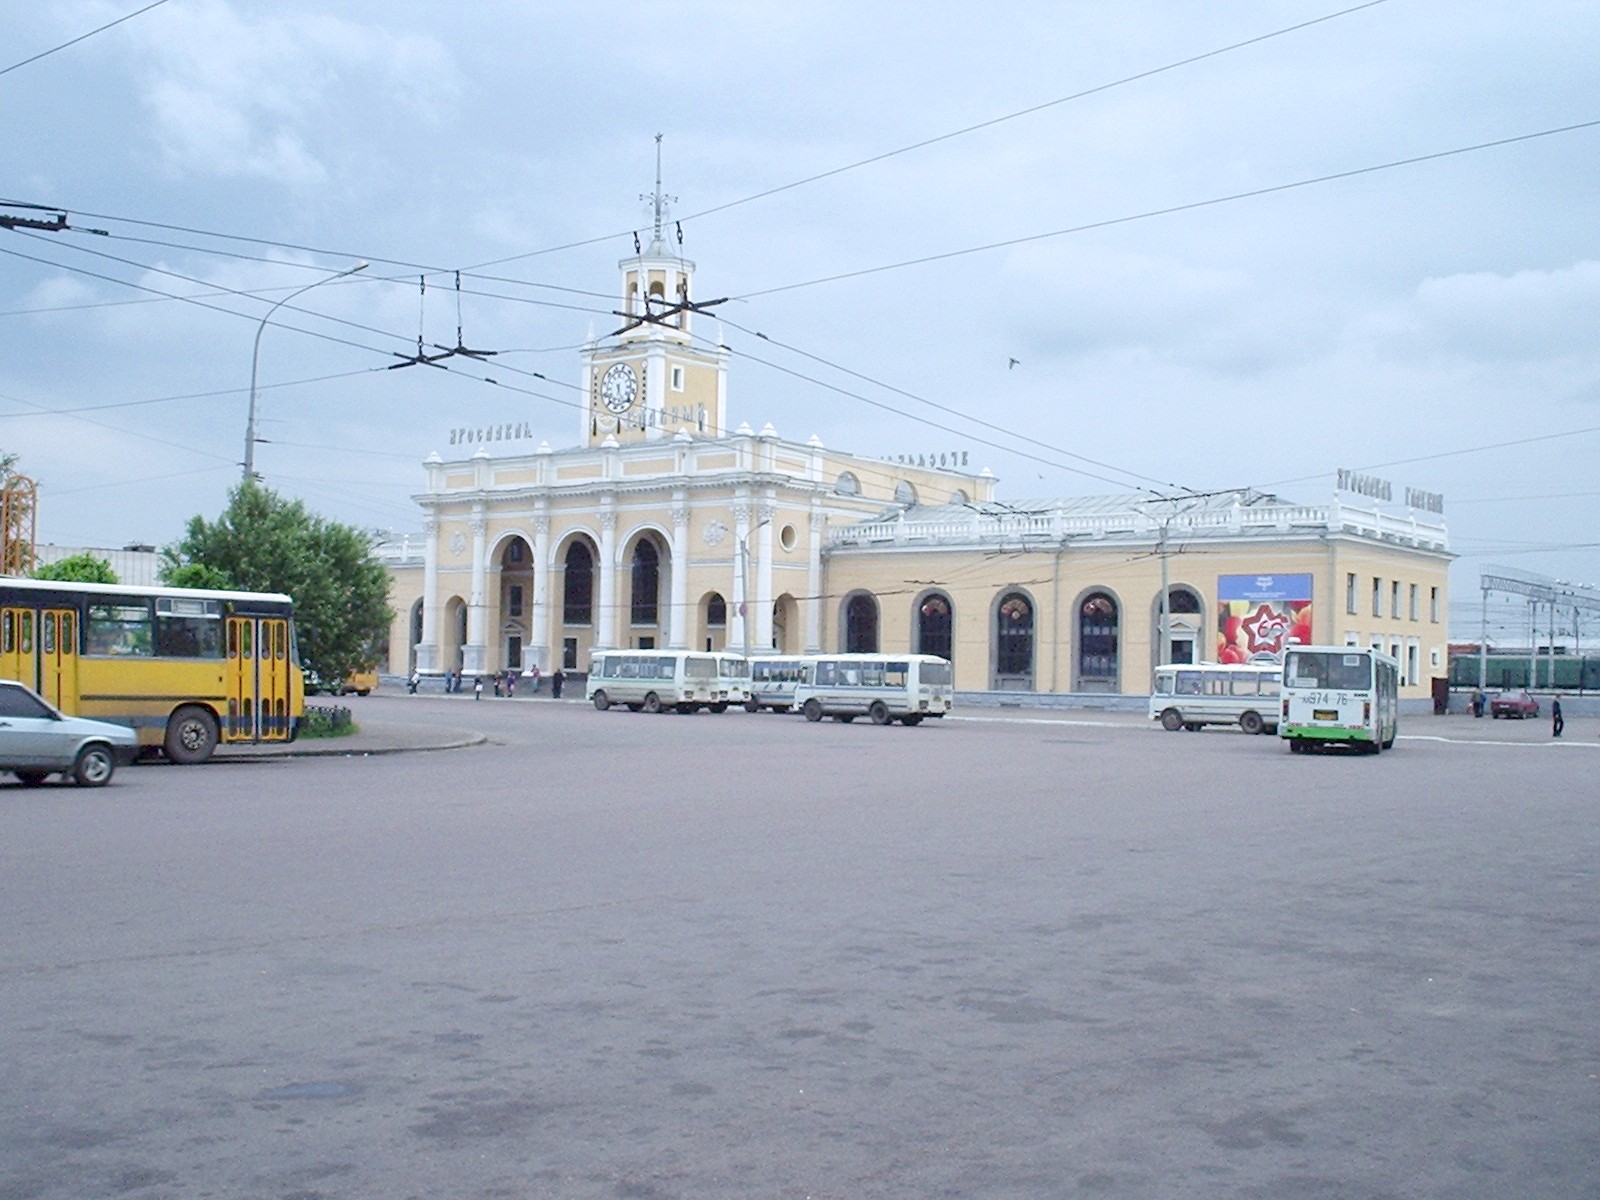 Малая Ярославская детская железная дорога — фотографии, сделанные в 2005 году